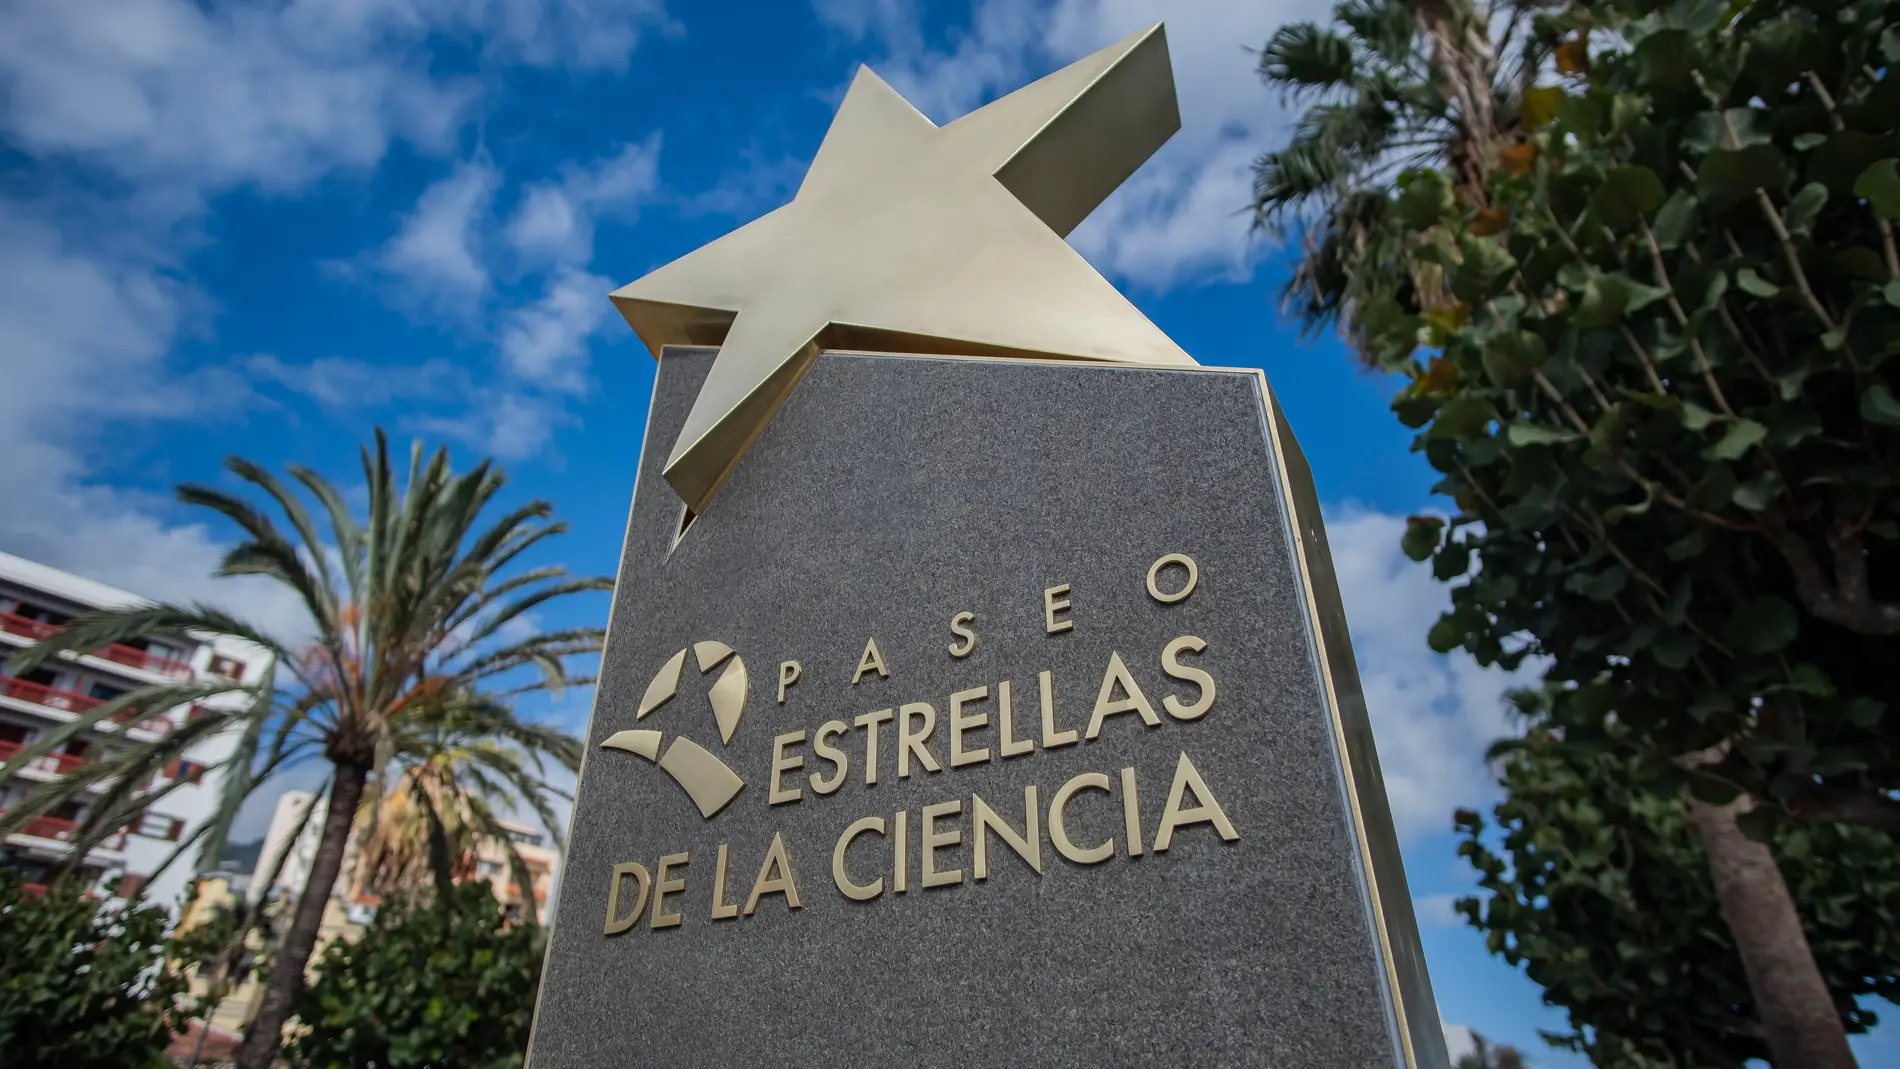 Paseo de las Estrellas de la Ciencia, La Palma.